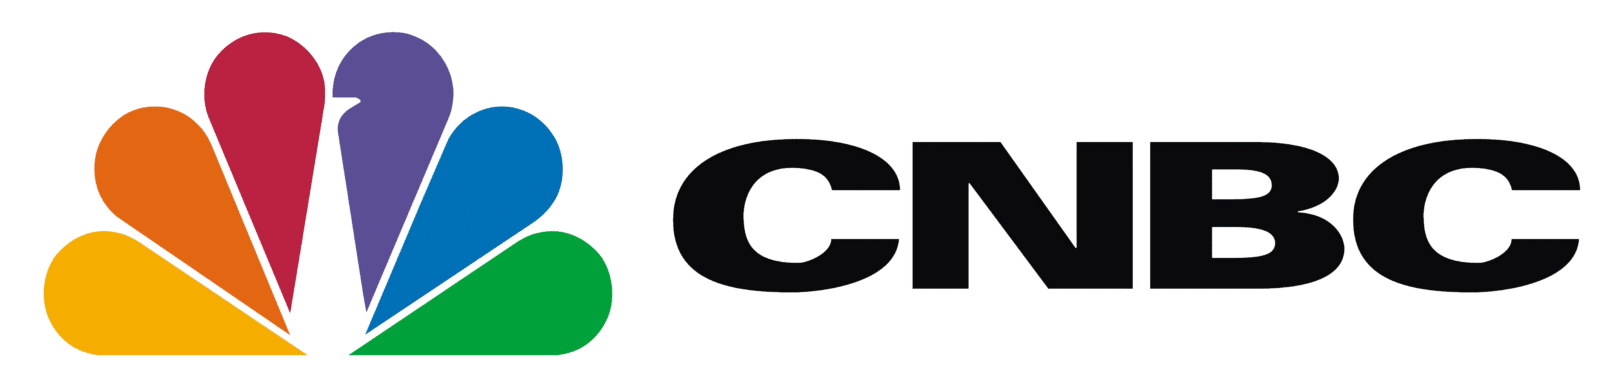 cbnc-logo-2